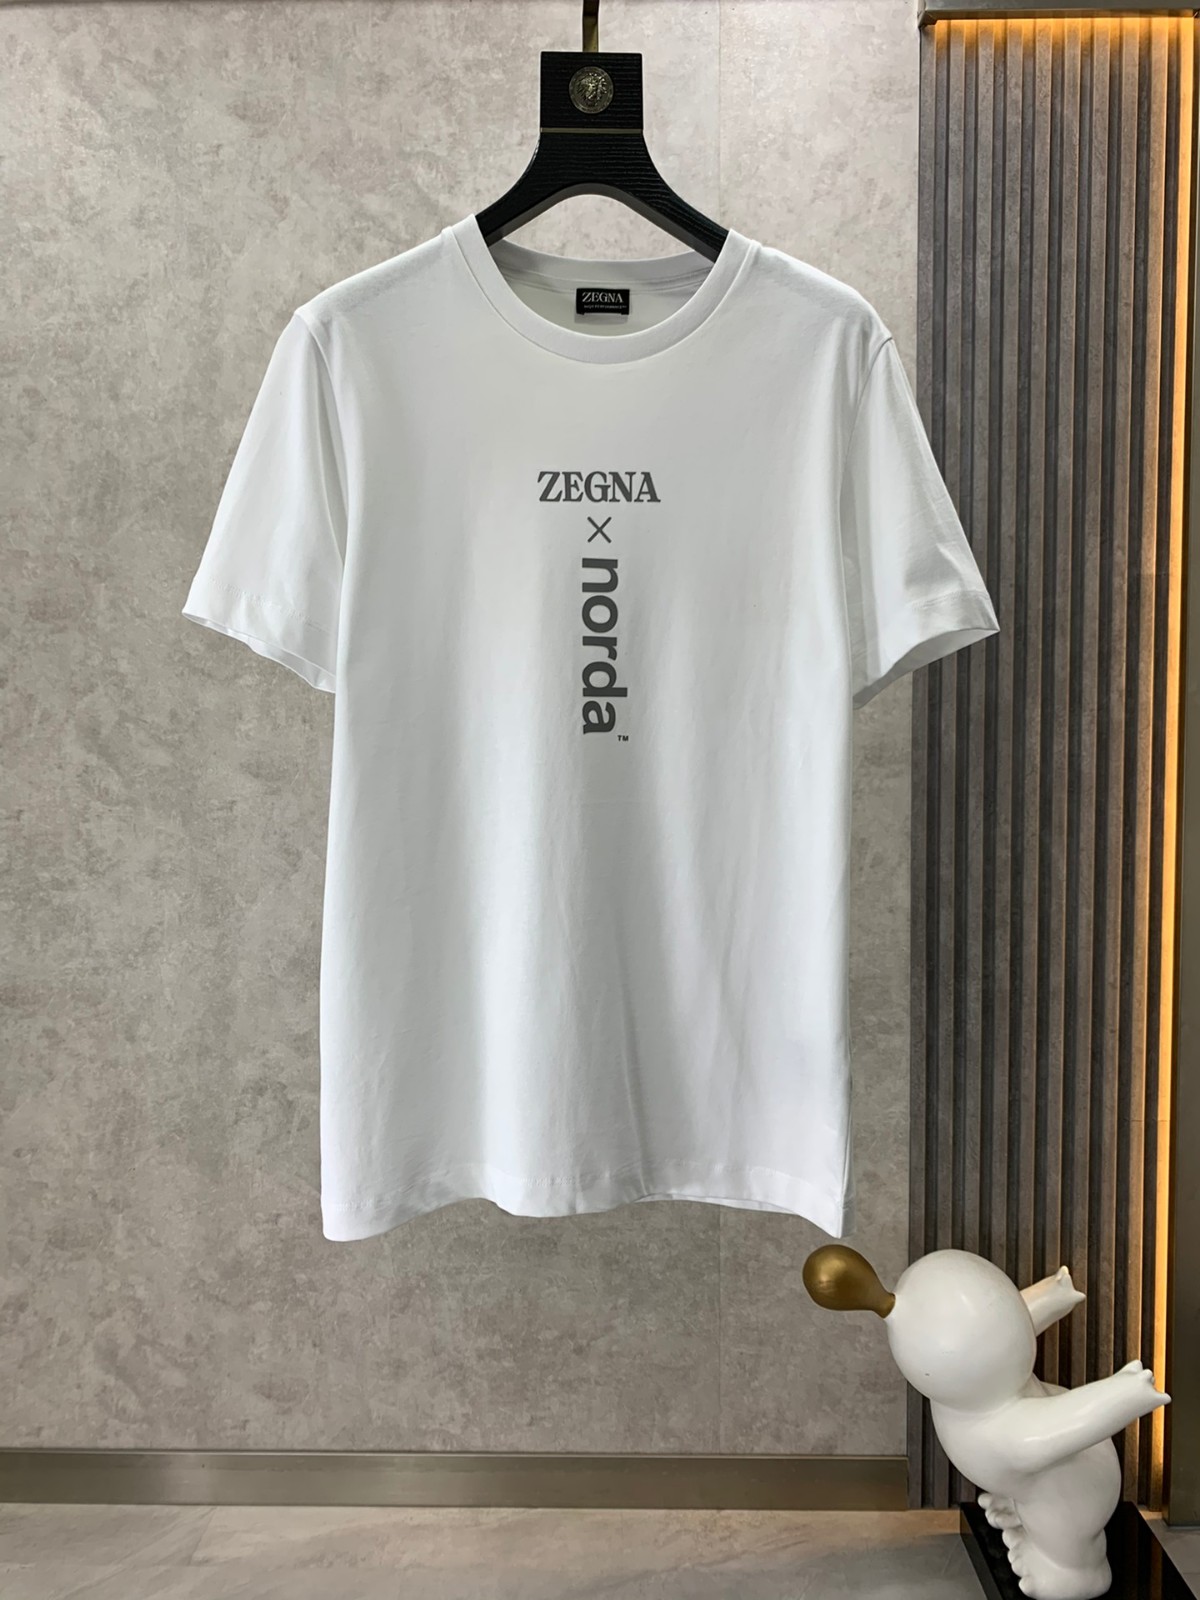 ZEGNA X NORDA プリントコットン 半袖 Tシャツ エルメネジルド・ゼニア Tシャツ コピー ホワイト